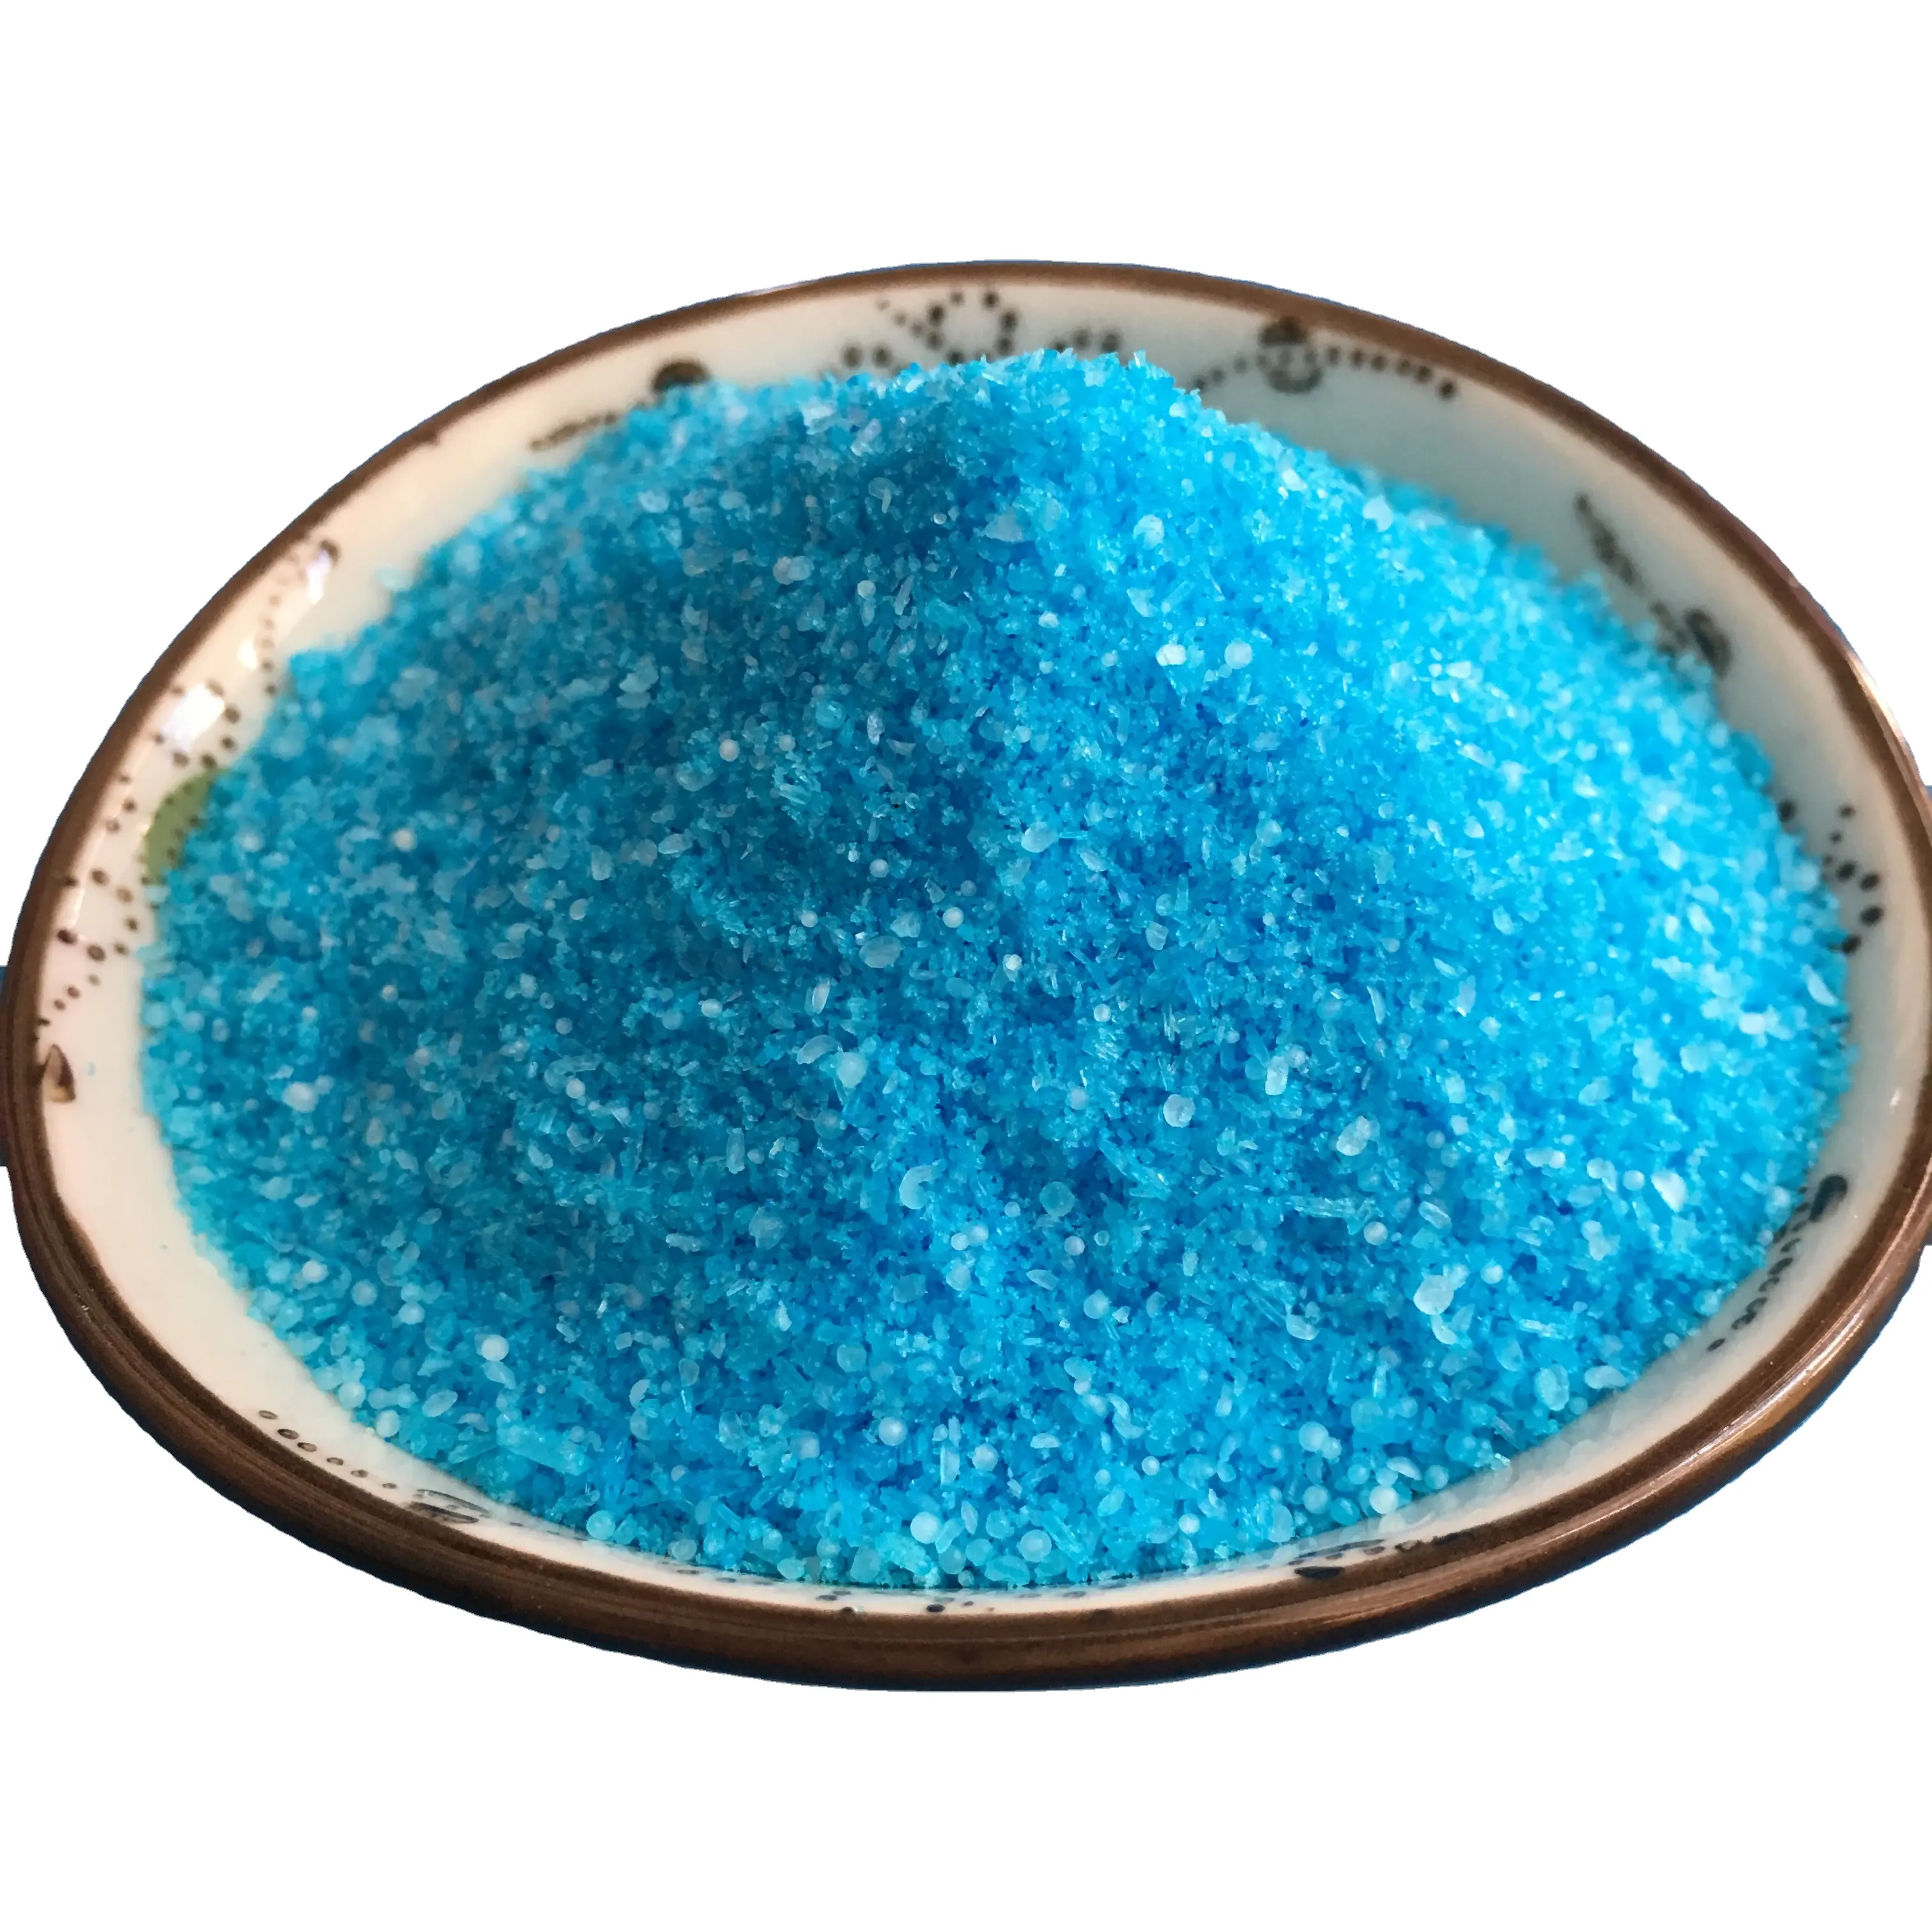 Melhor preço indústria grau CuSO4 cristal azul cobre sulfato